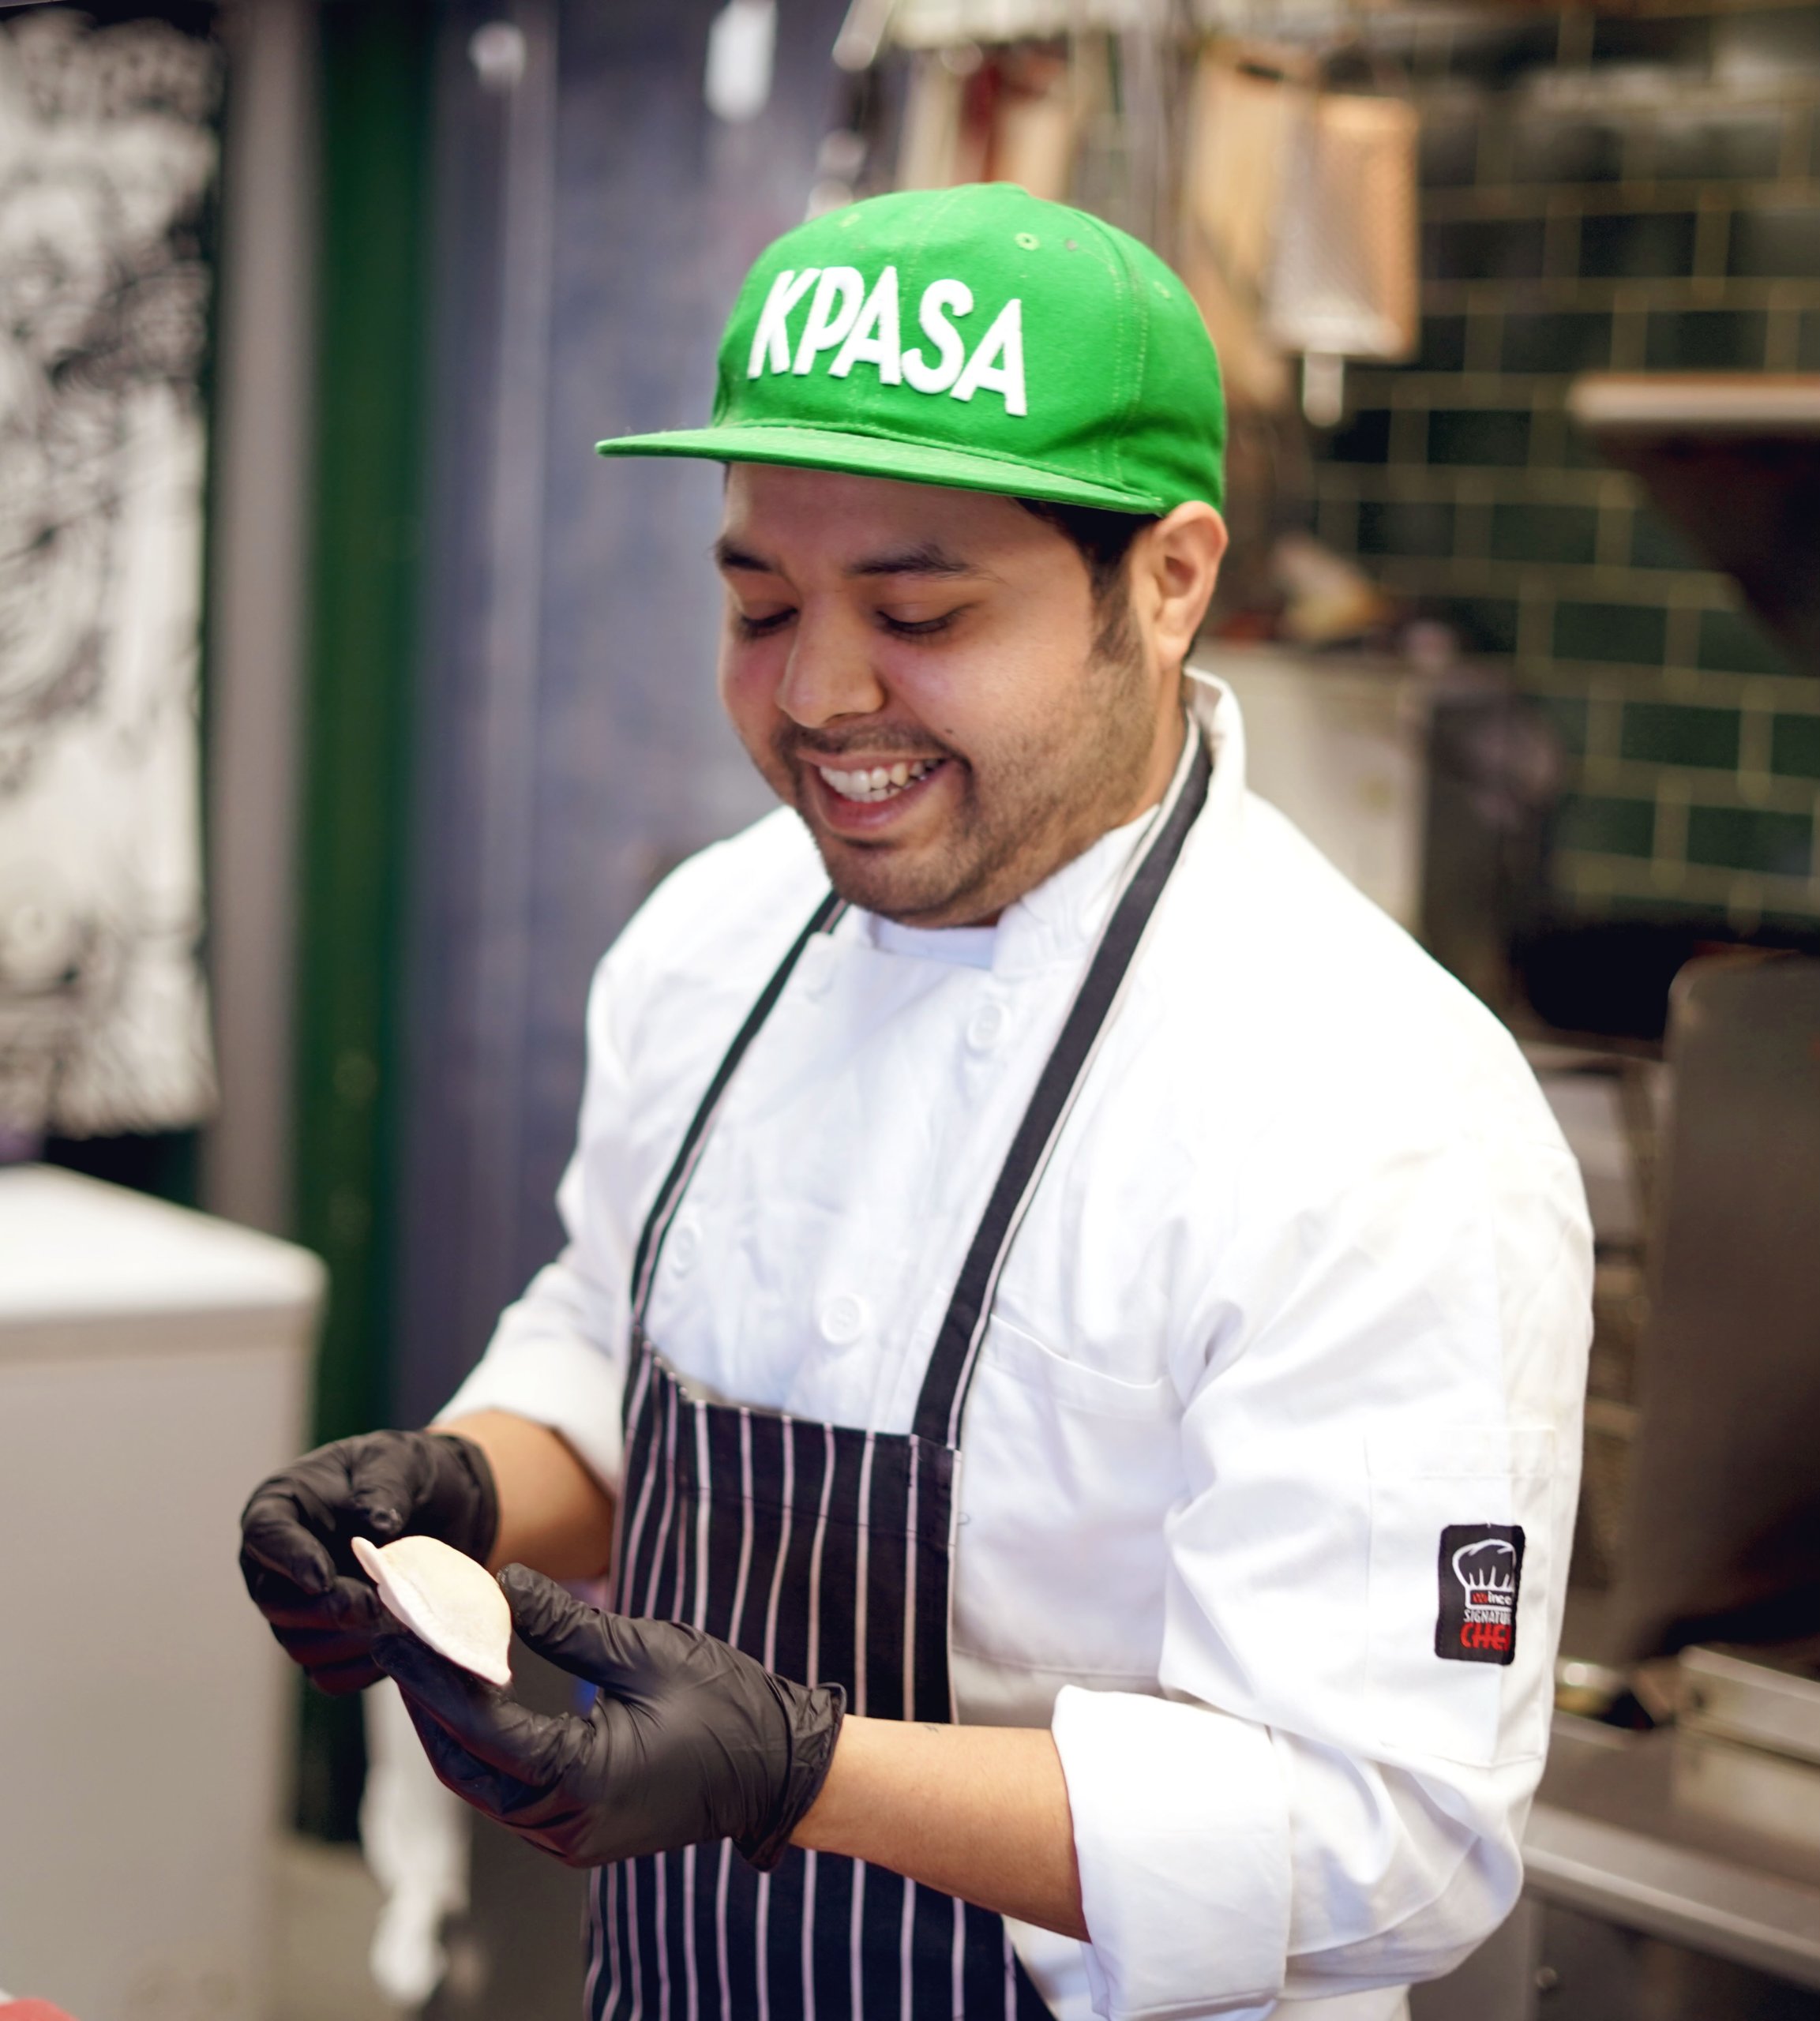 K Pasa Chef Miguel Reyes Castillo